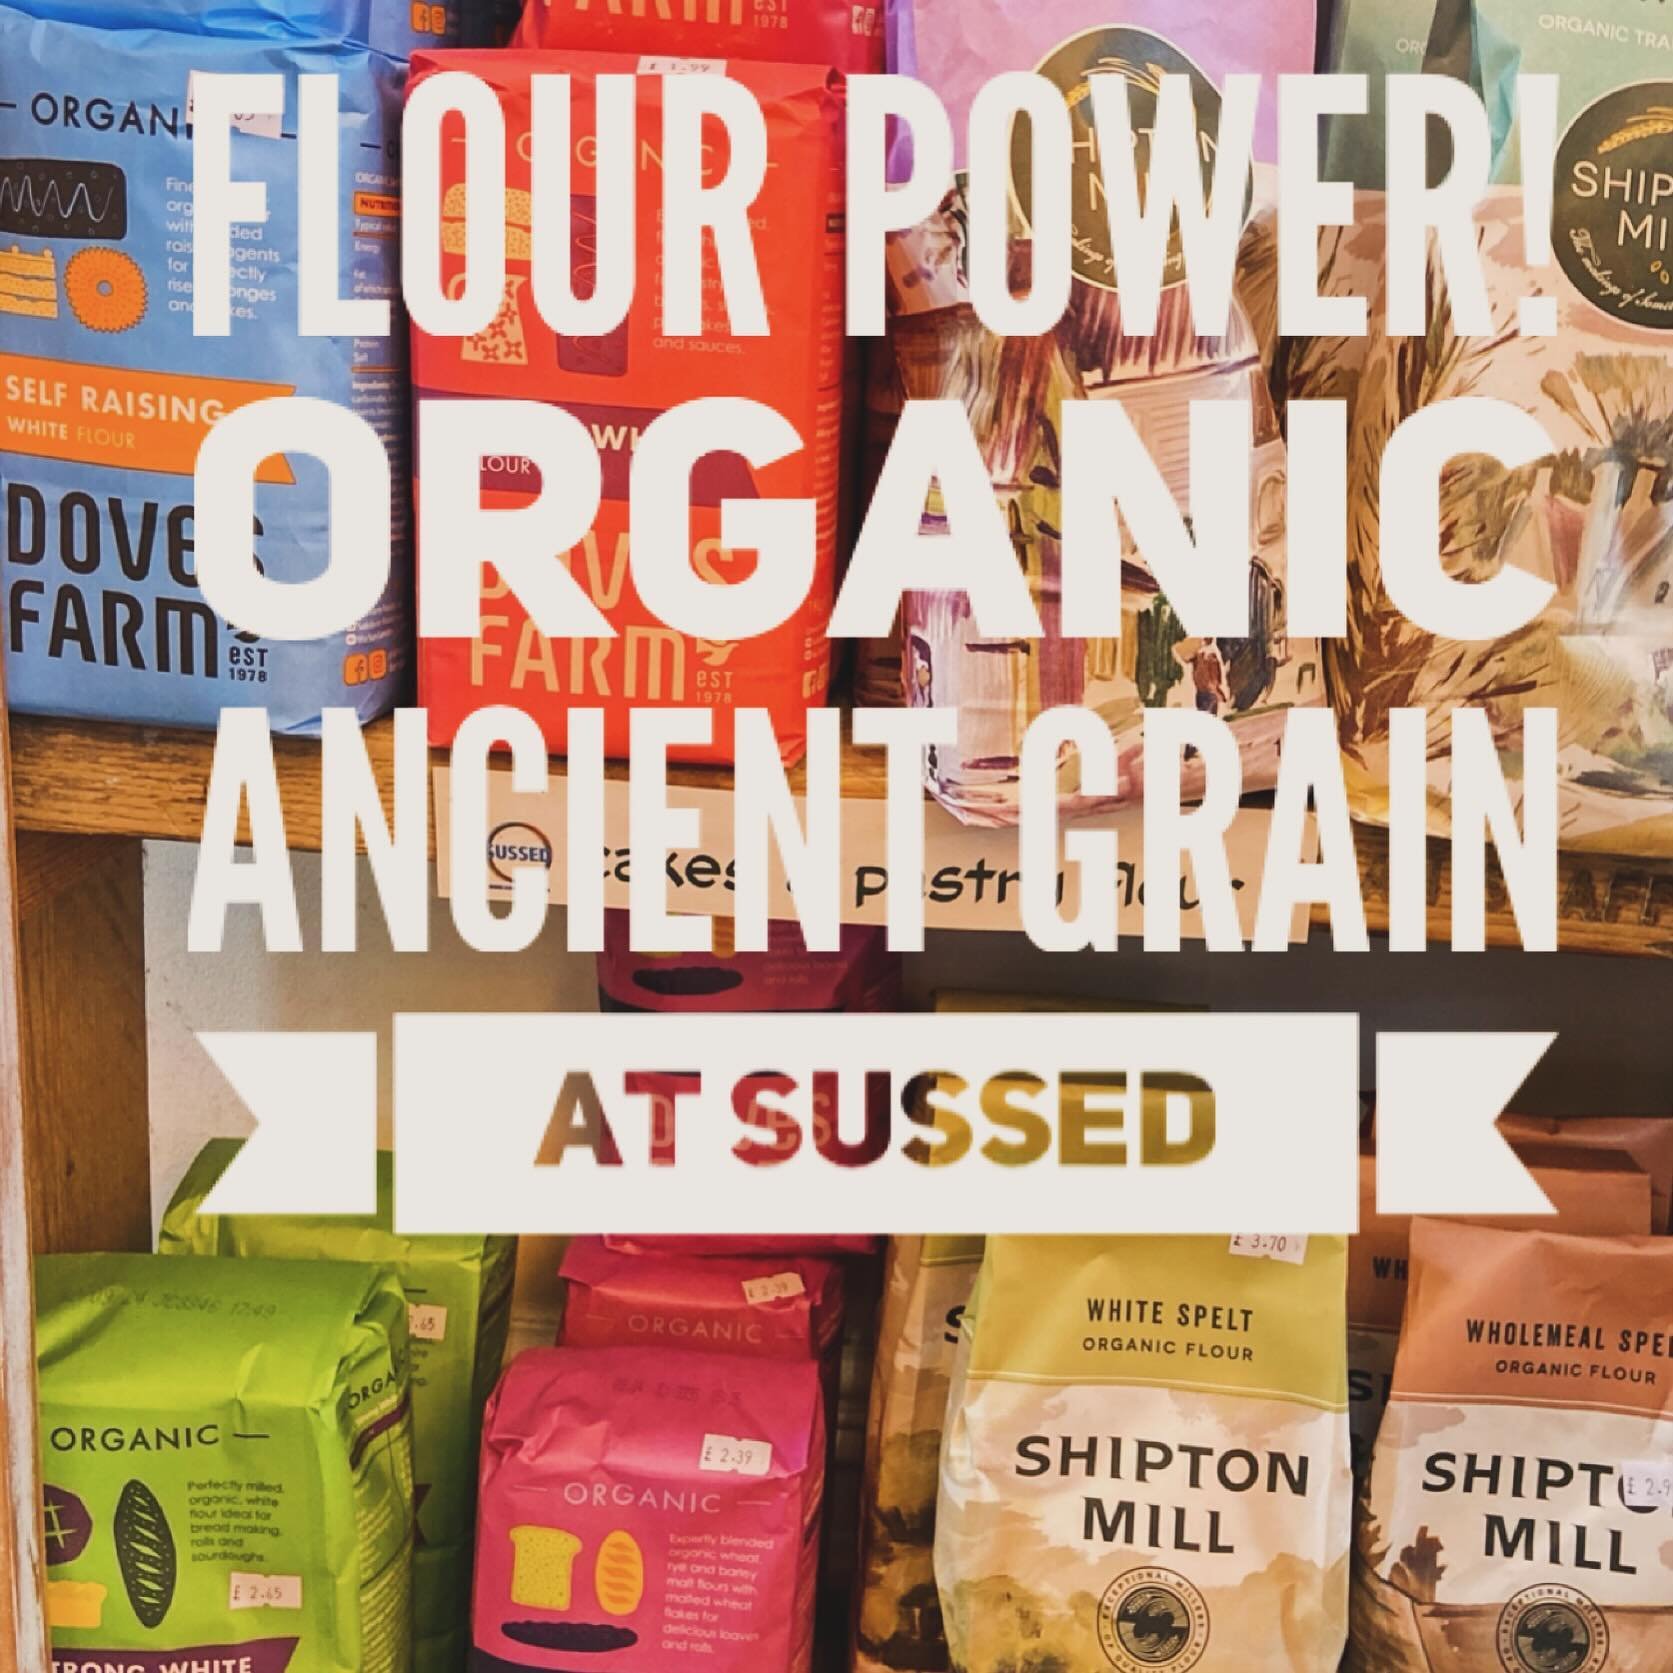 #organic flour at SUSSED